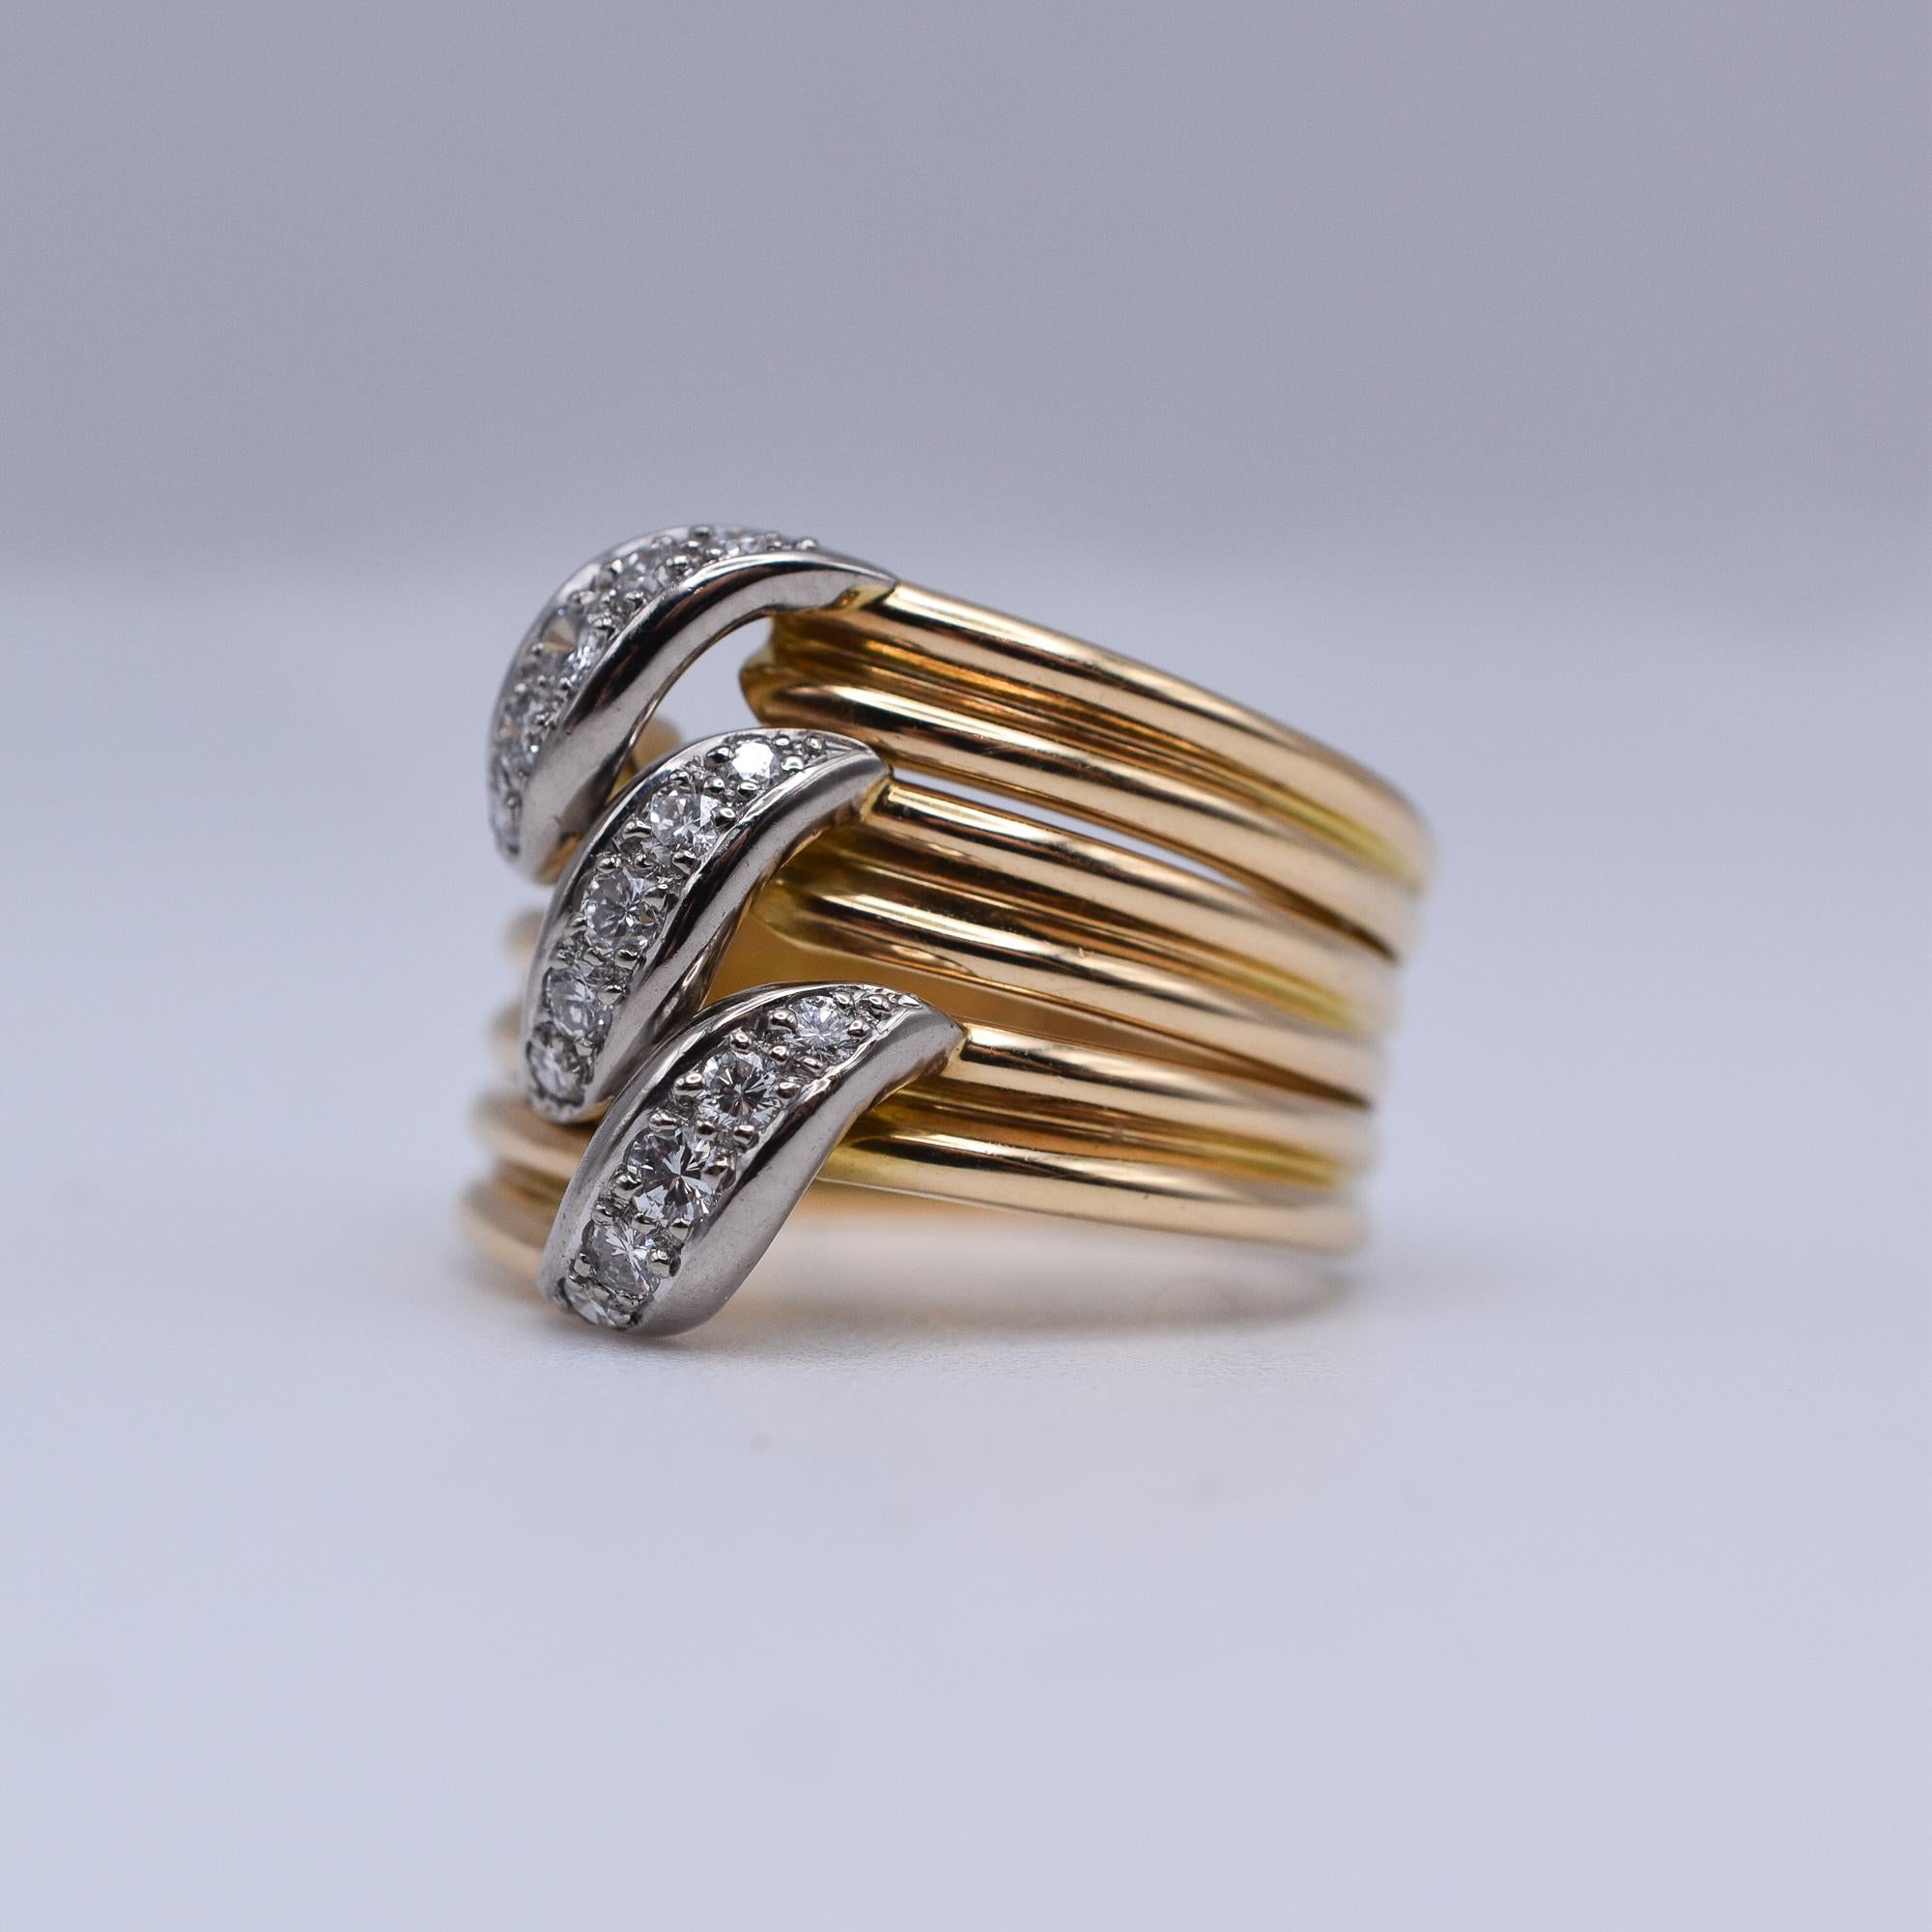 Cartier Gold und Diamant Trinity Ring
Ein dreireihiger Gold- und Diamantring aus 18 Karat Gelbgold und Platin mit etwa 0,30 Karat Diamanten. Hergestellt in Frankreich, um 1960. Signiert Cartier mit Seriennummer.

Ring Größe: US 7